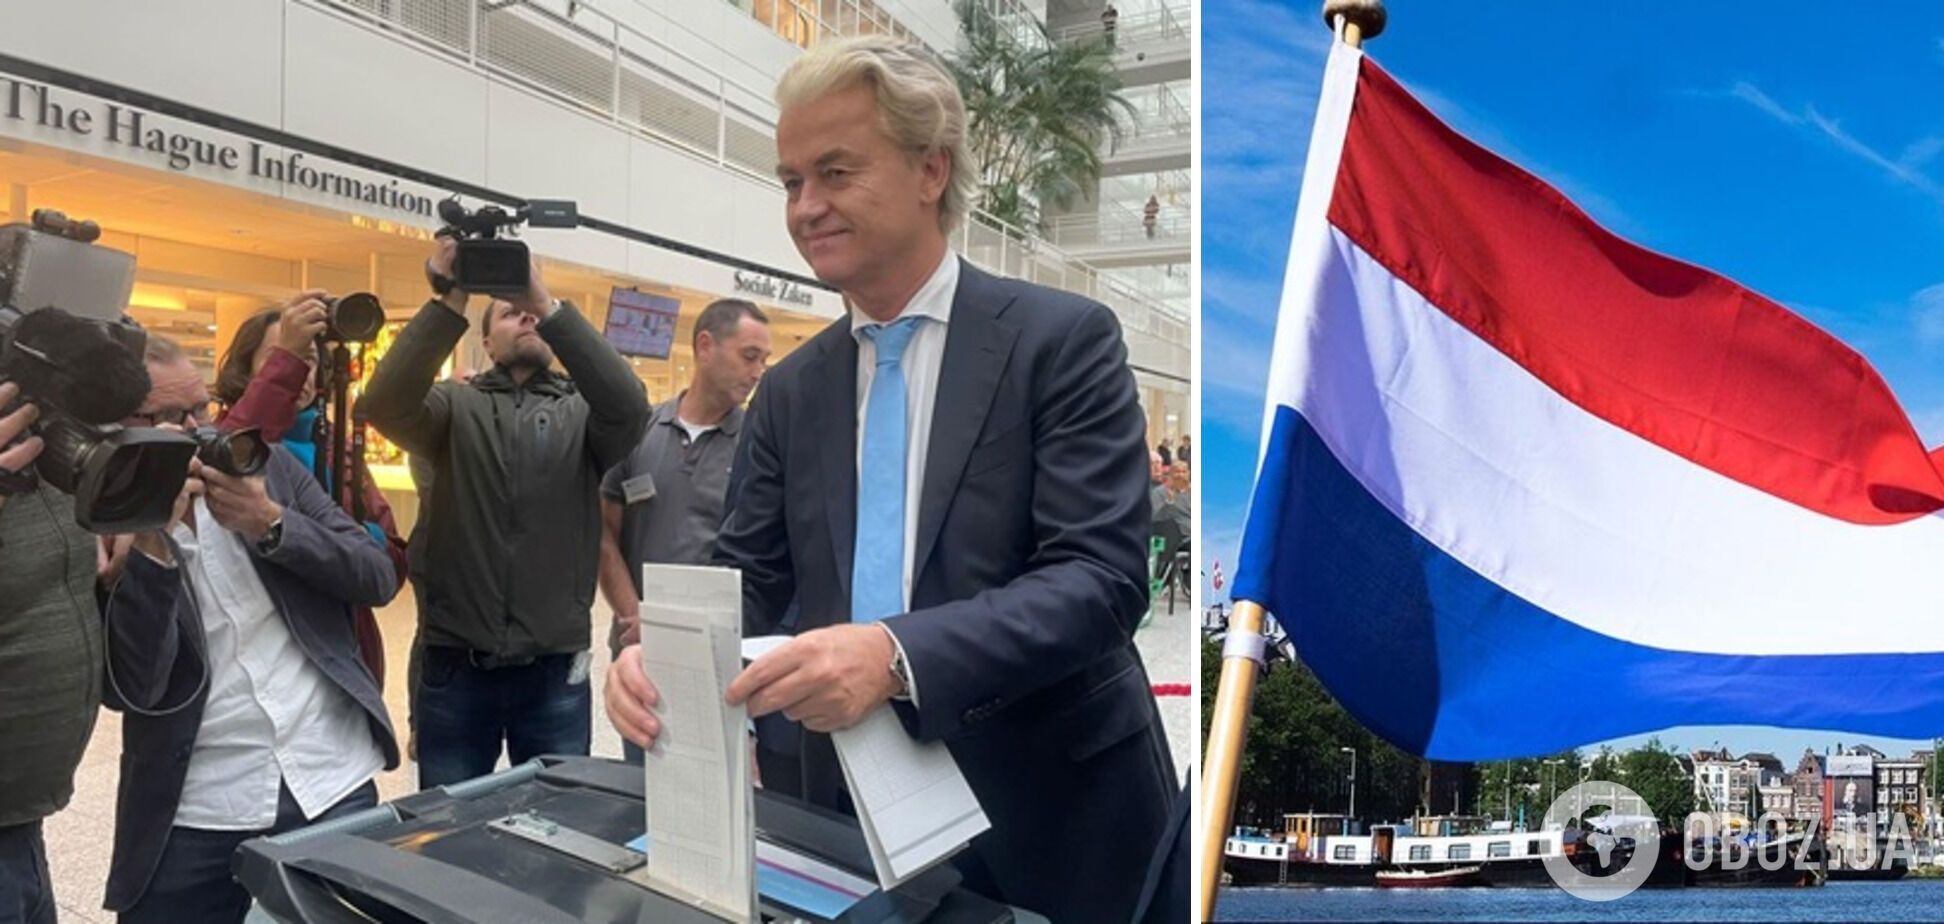  'Кошмар для Брюсселя': чим відомий лідер партії, яка перемагає на парламентських виборах у Нідерландах